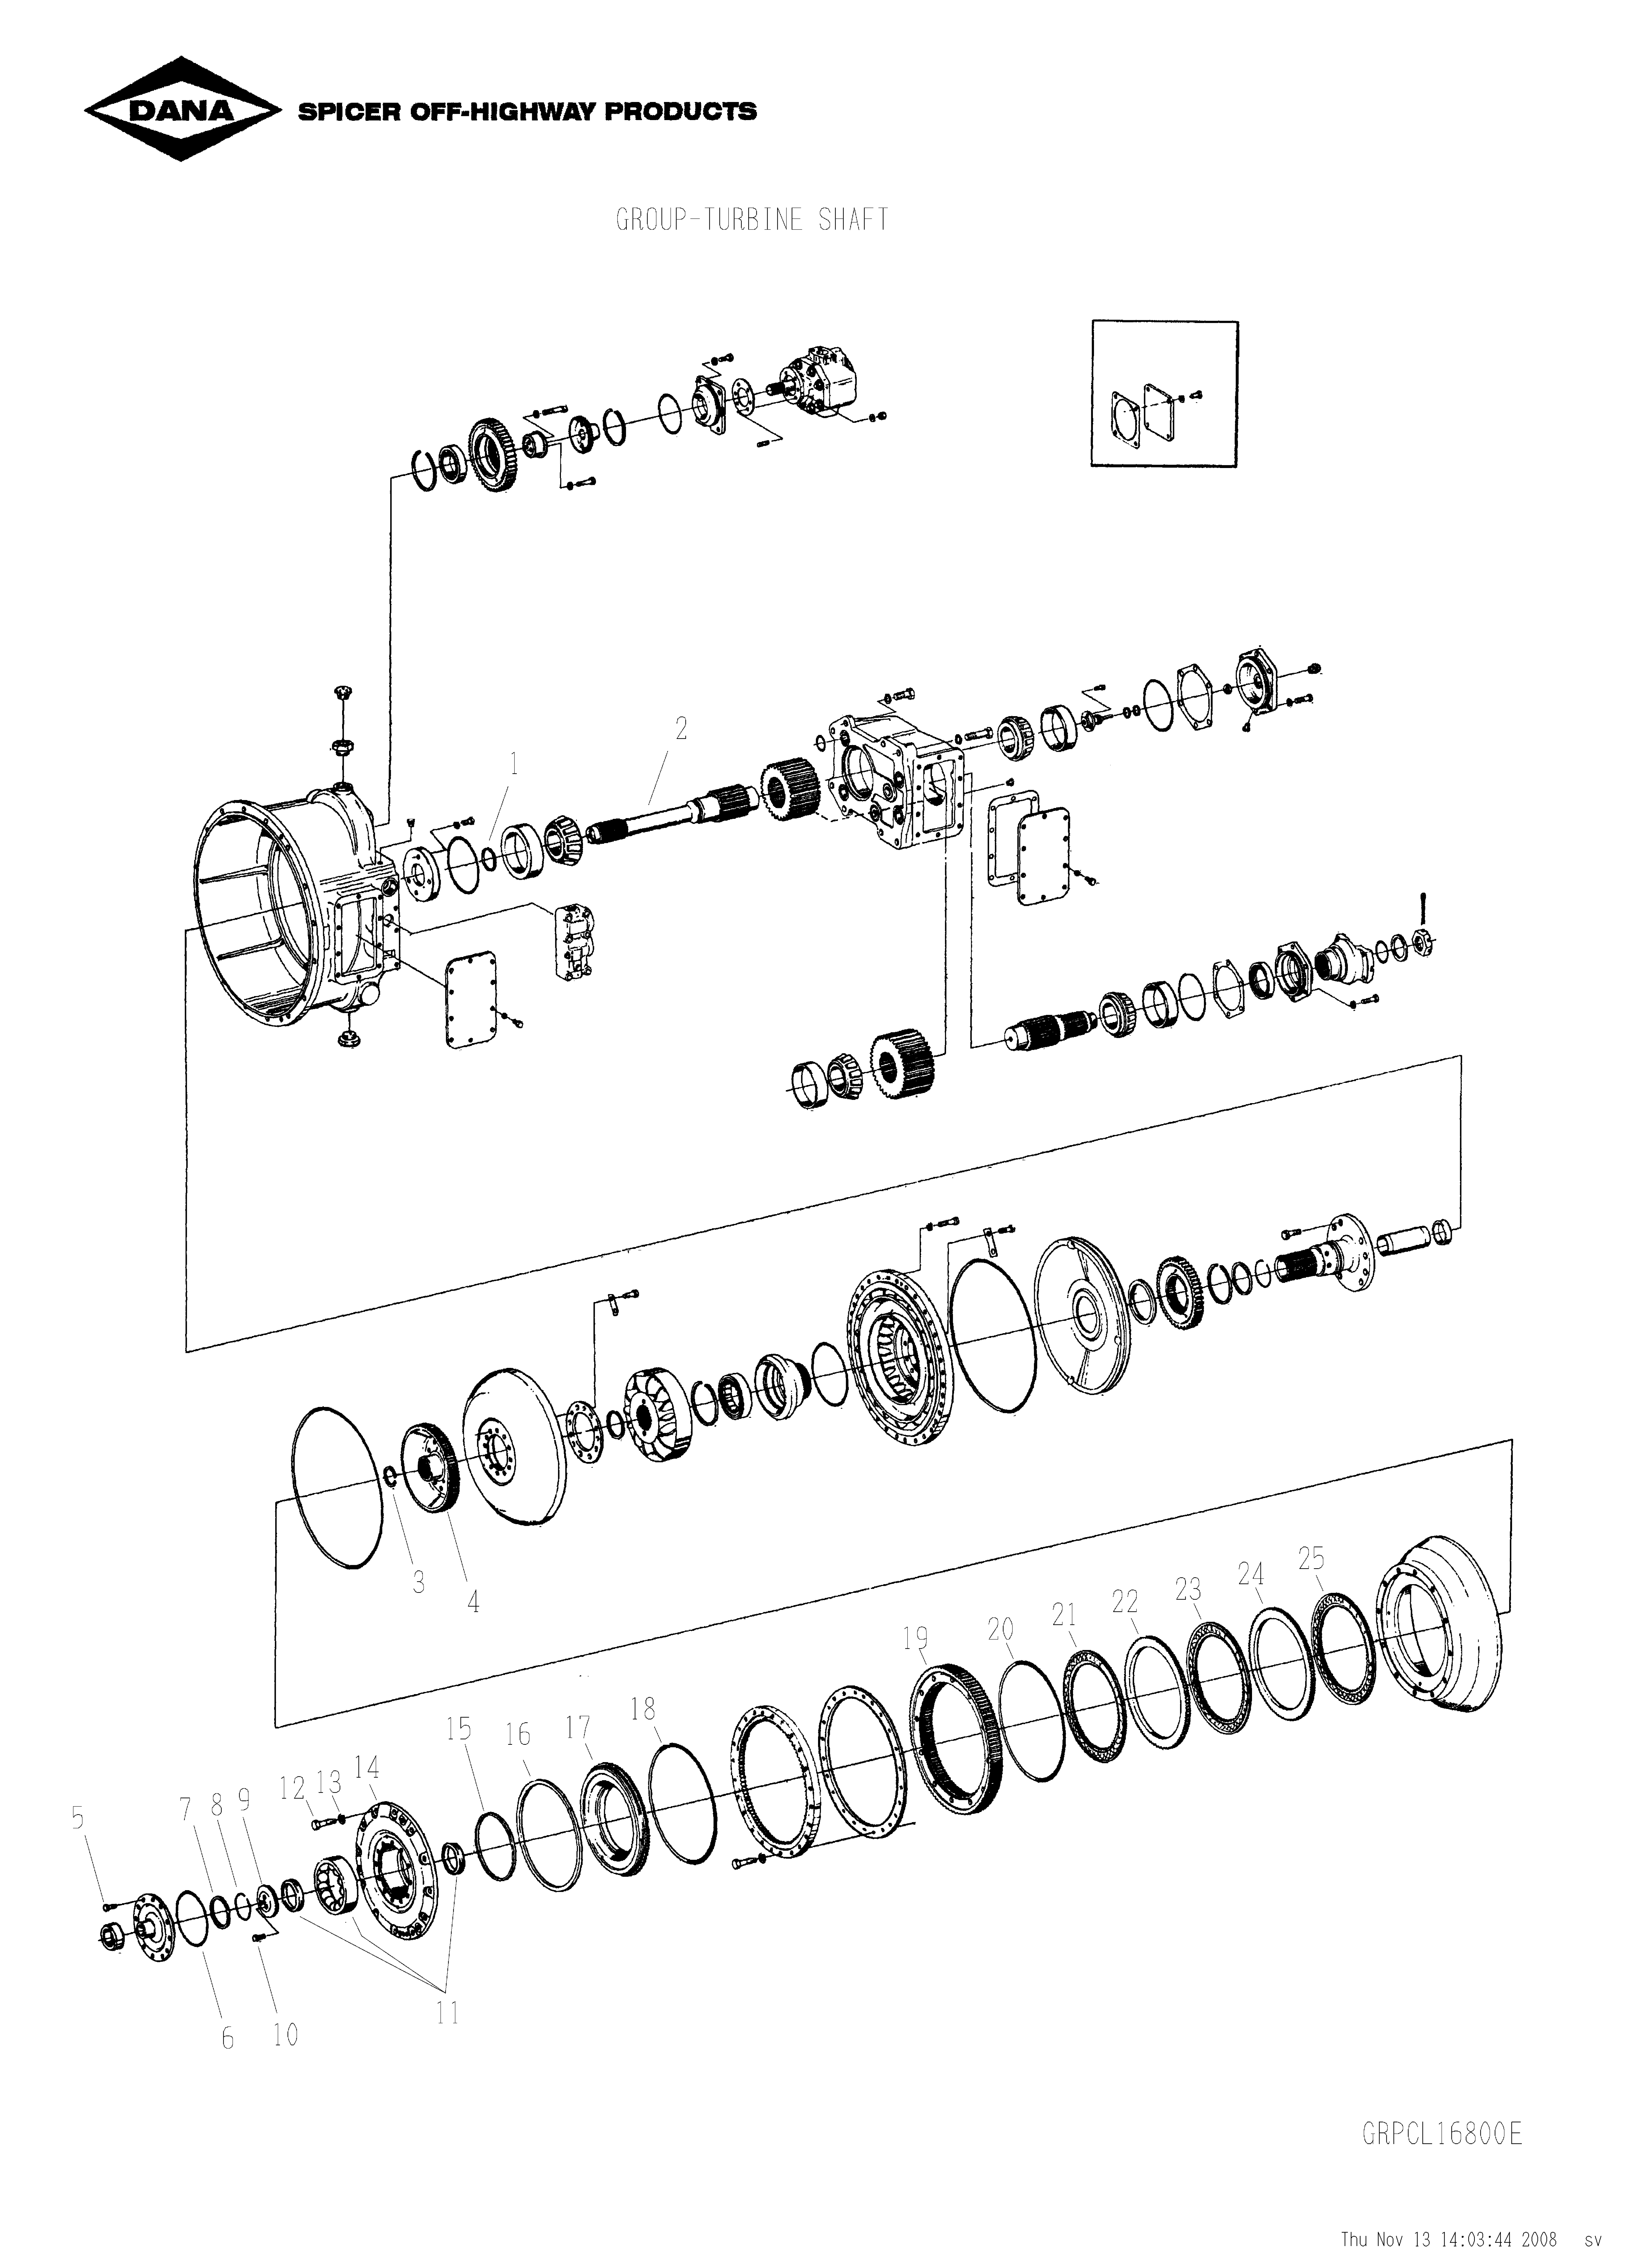 drawing for SCHOEMA, SCHOETTLER MASCHINENFABRIK K24.000313 - O-RING (figure 2)